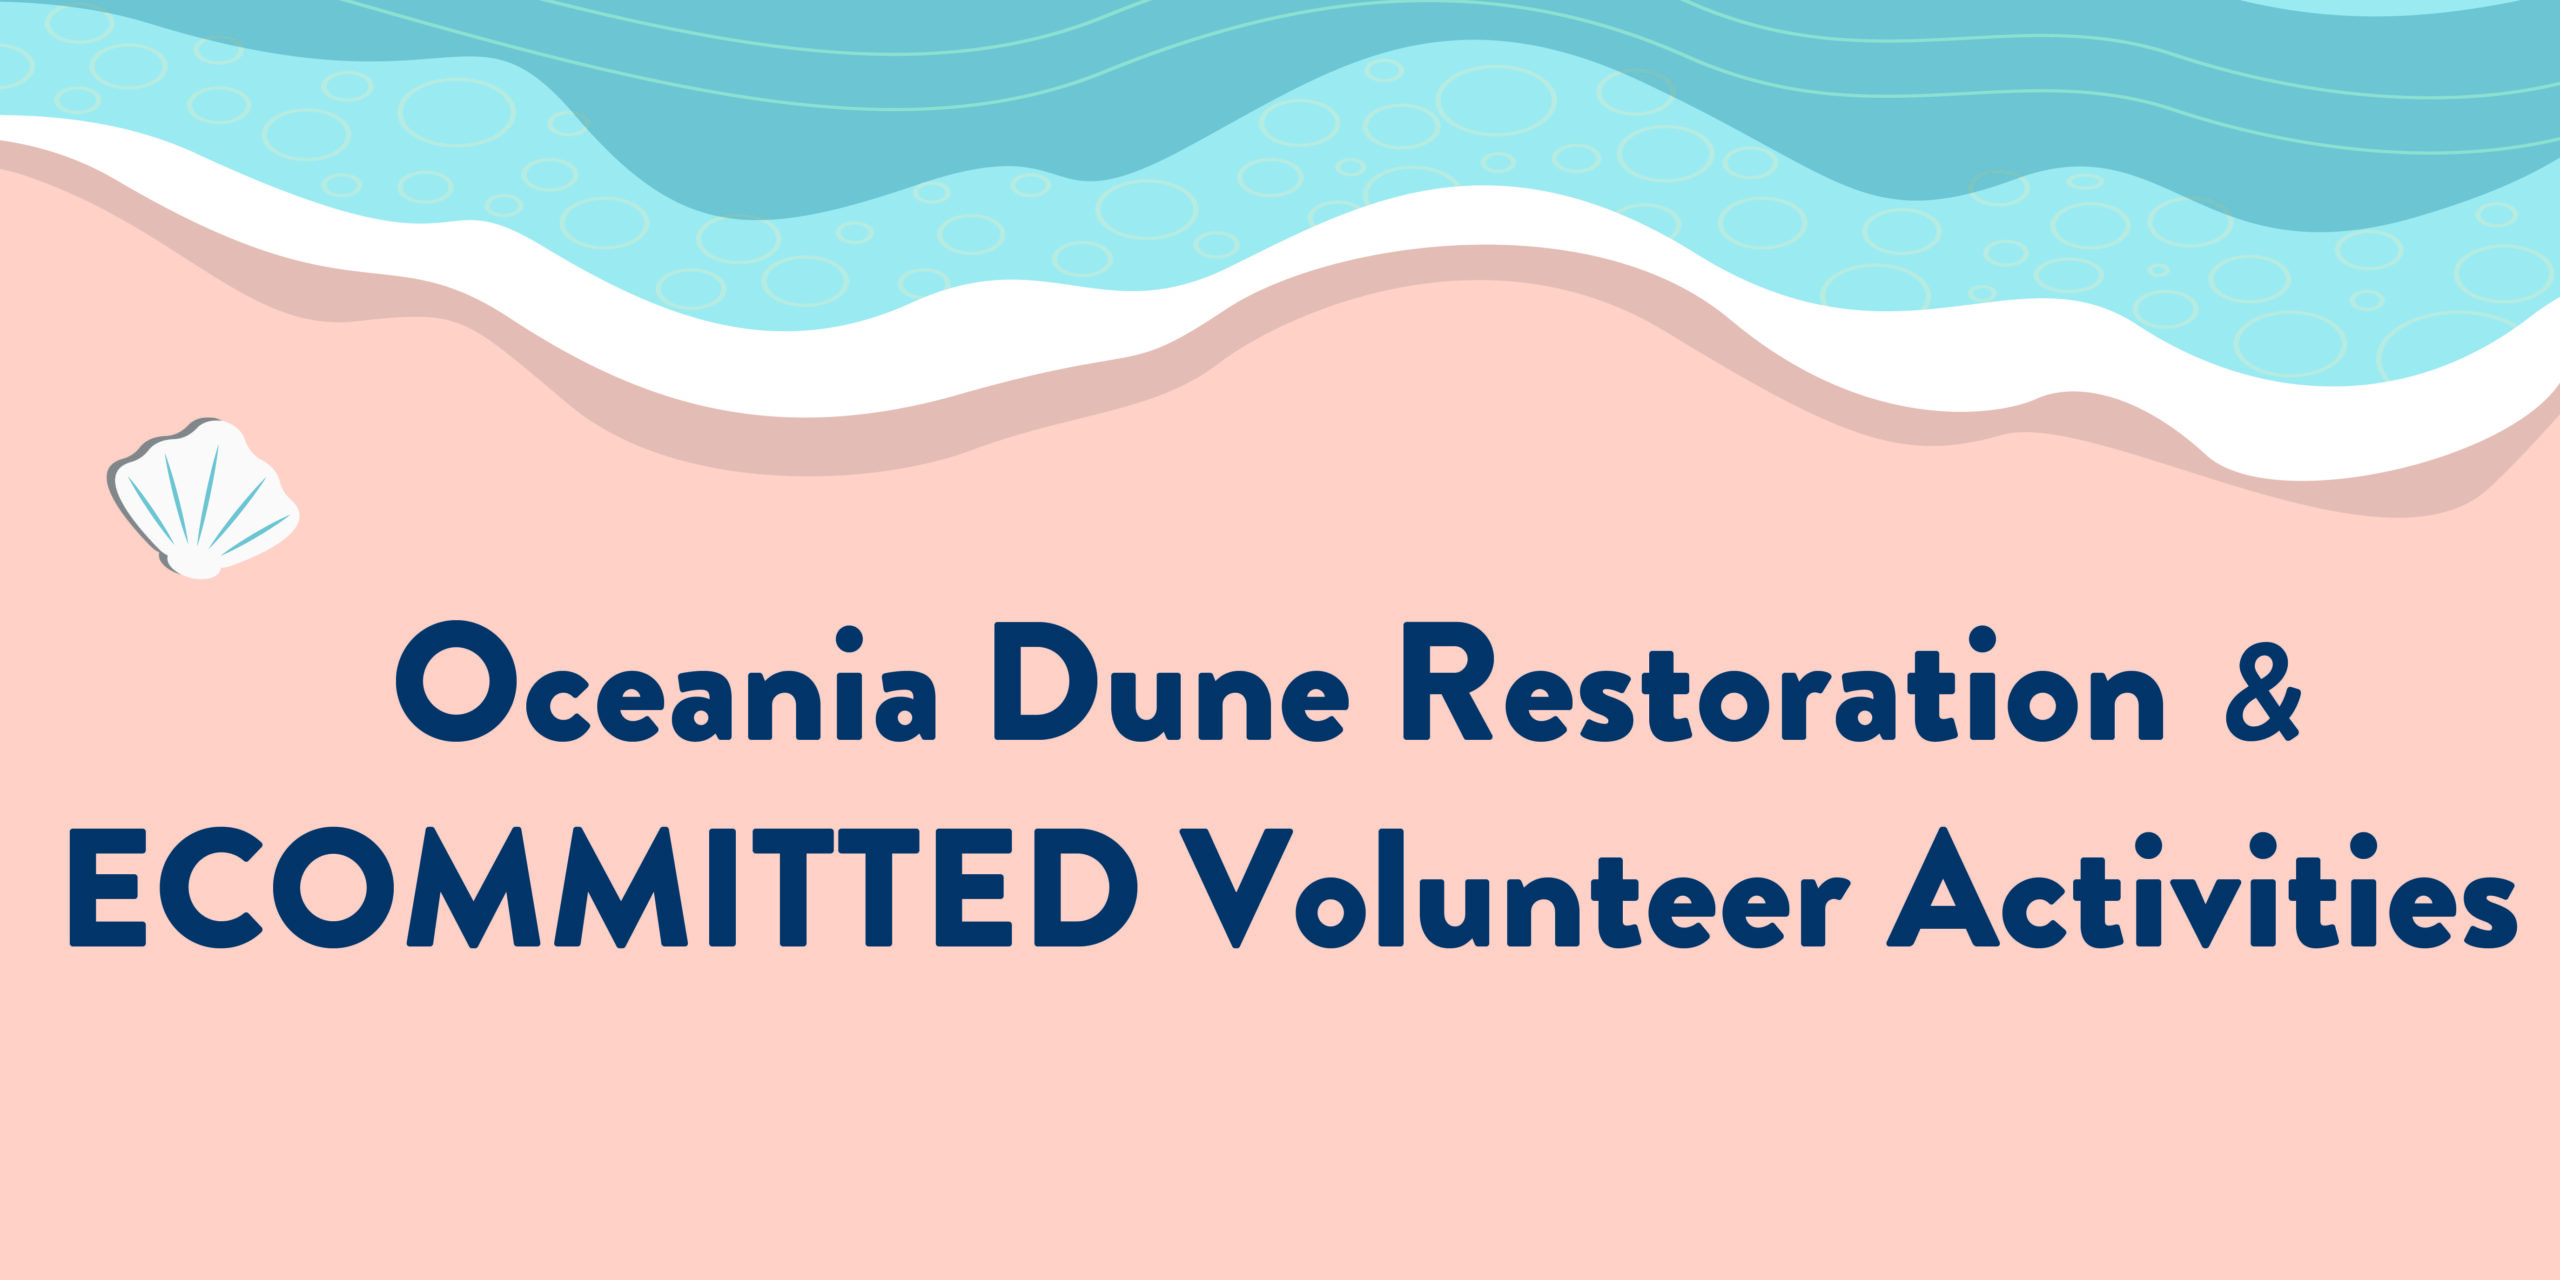 Oceania Dune Restoration & ECOMMITTED Volunteer Activities